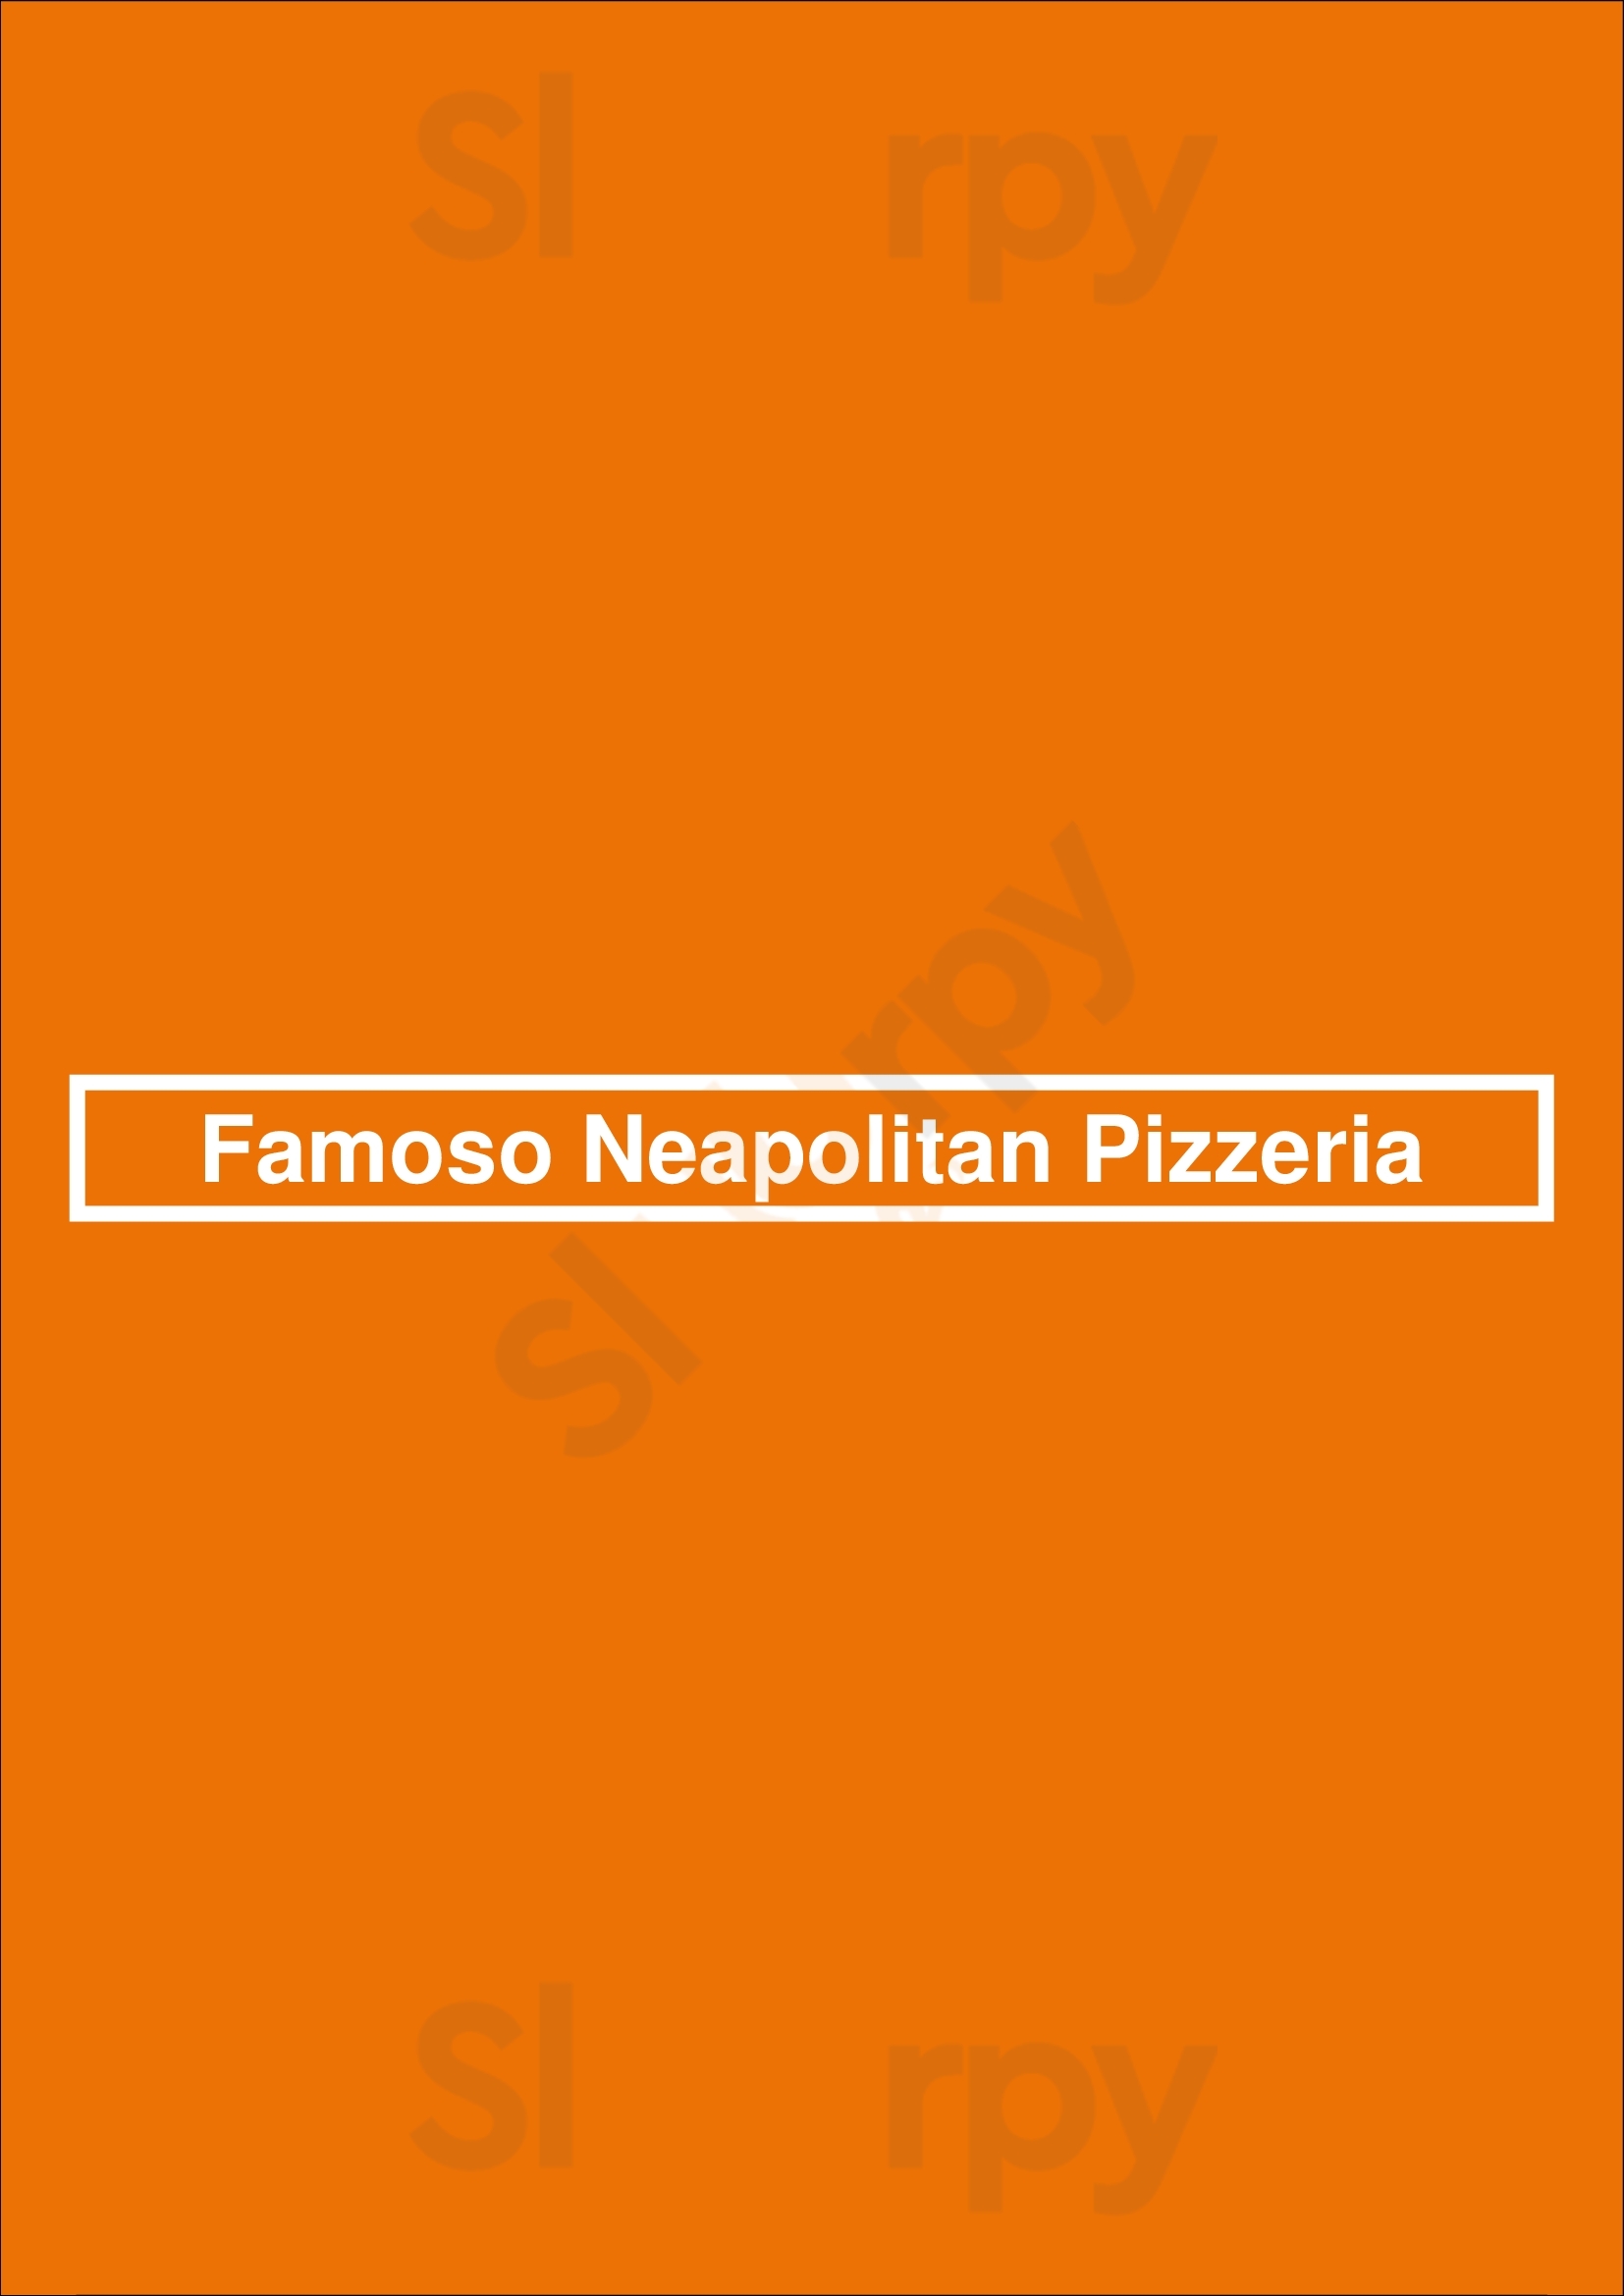 Famoso Neapolitan Pizzeria Edmonton Menu - 1